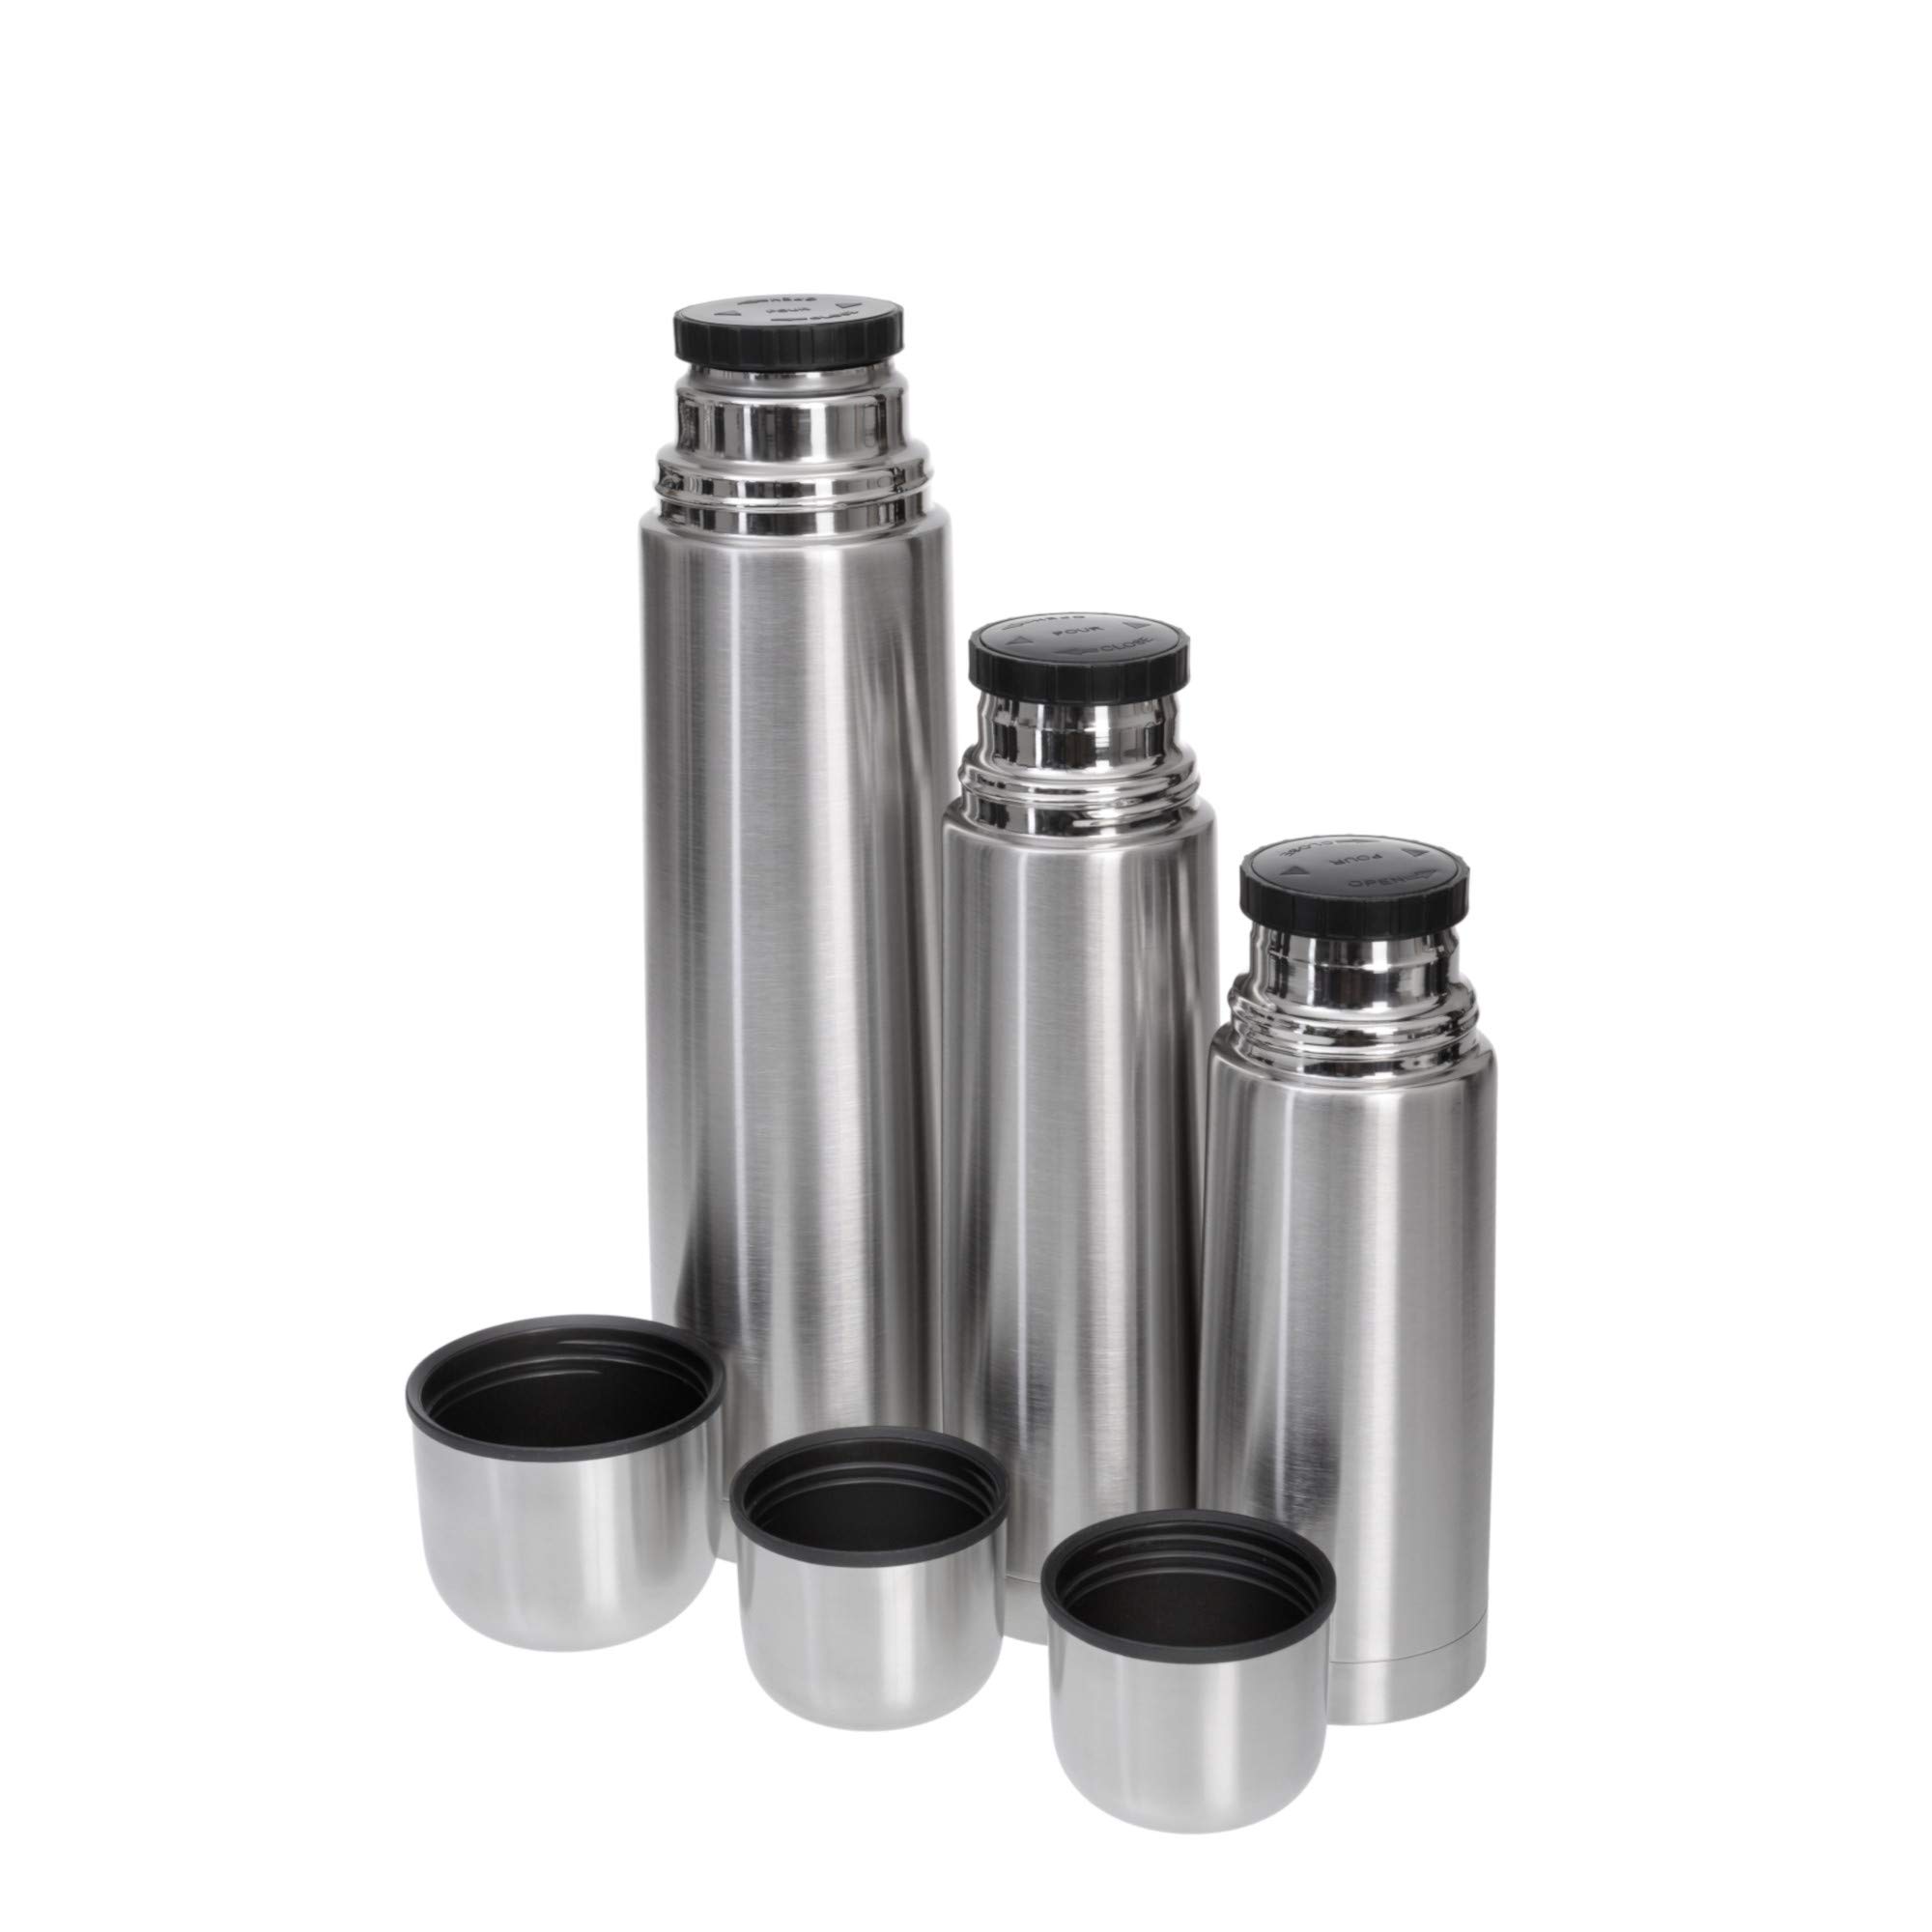 GRÄWE Isolierflaschen-Set 3-teilig Edelstahl 0,35 Liter,0,5 Liter und 1 Liter - Silber